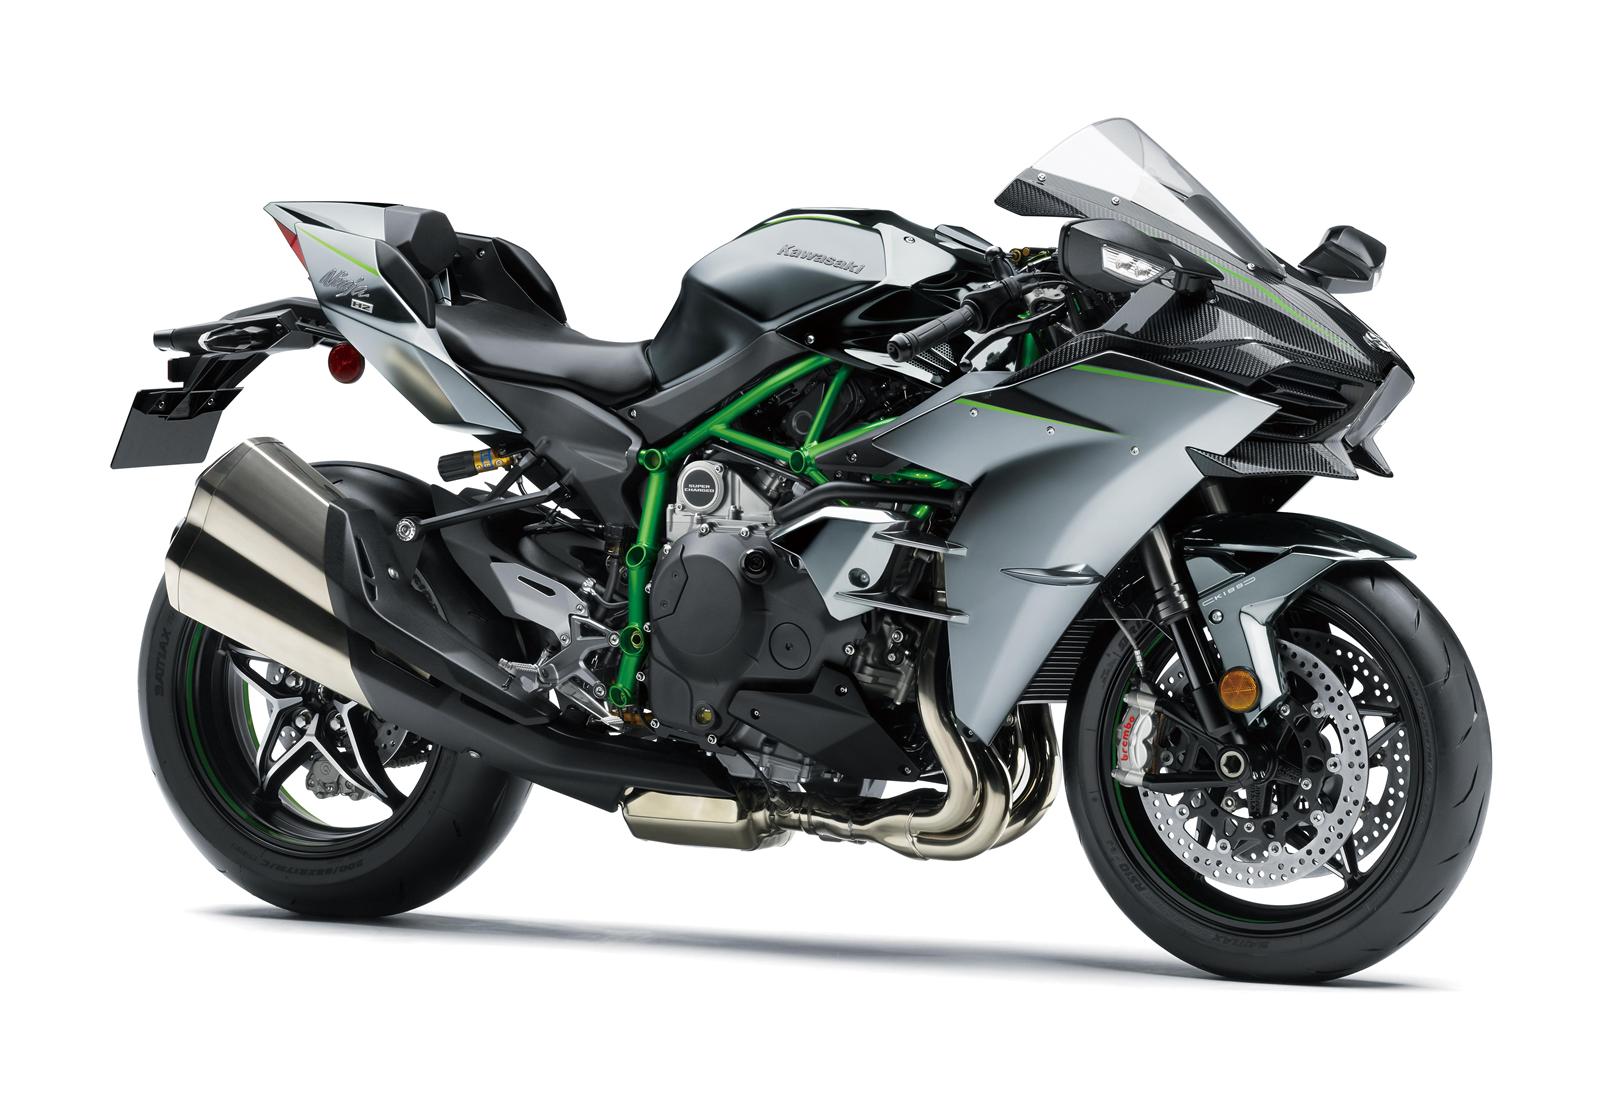 Kawasaki bổ sung nhiều màu mới cho loạt môtô phiên bản 2018